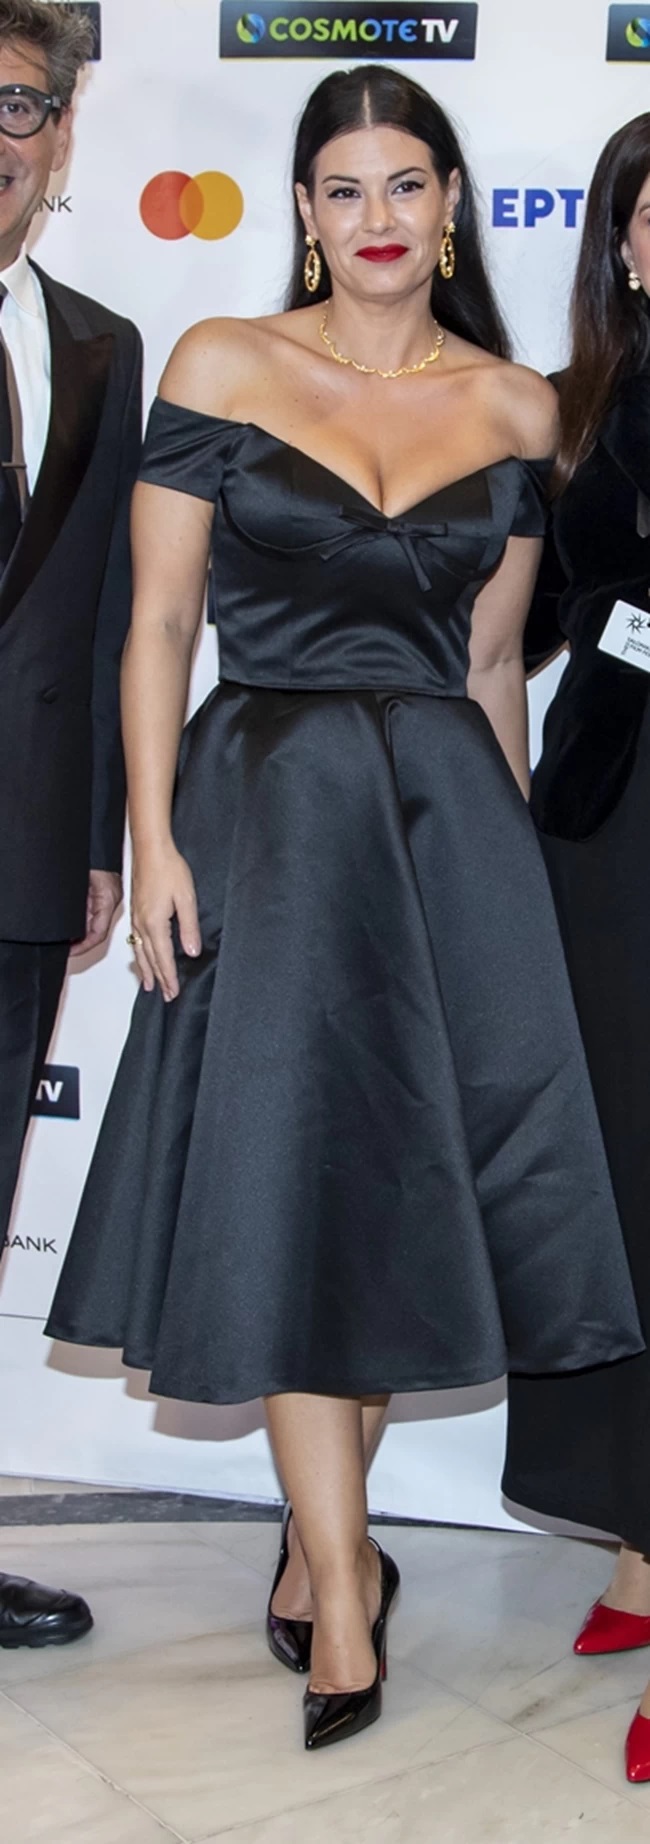 Έλαμψε η Μαρία Κορινθίου με μαύρο μίντι φόρεμα και εντυπωσιακά κοσμήματα! (εικόνες)